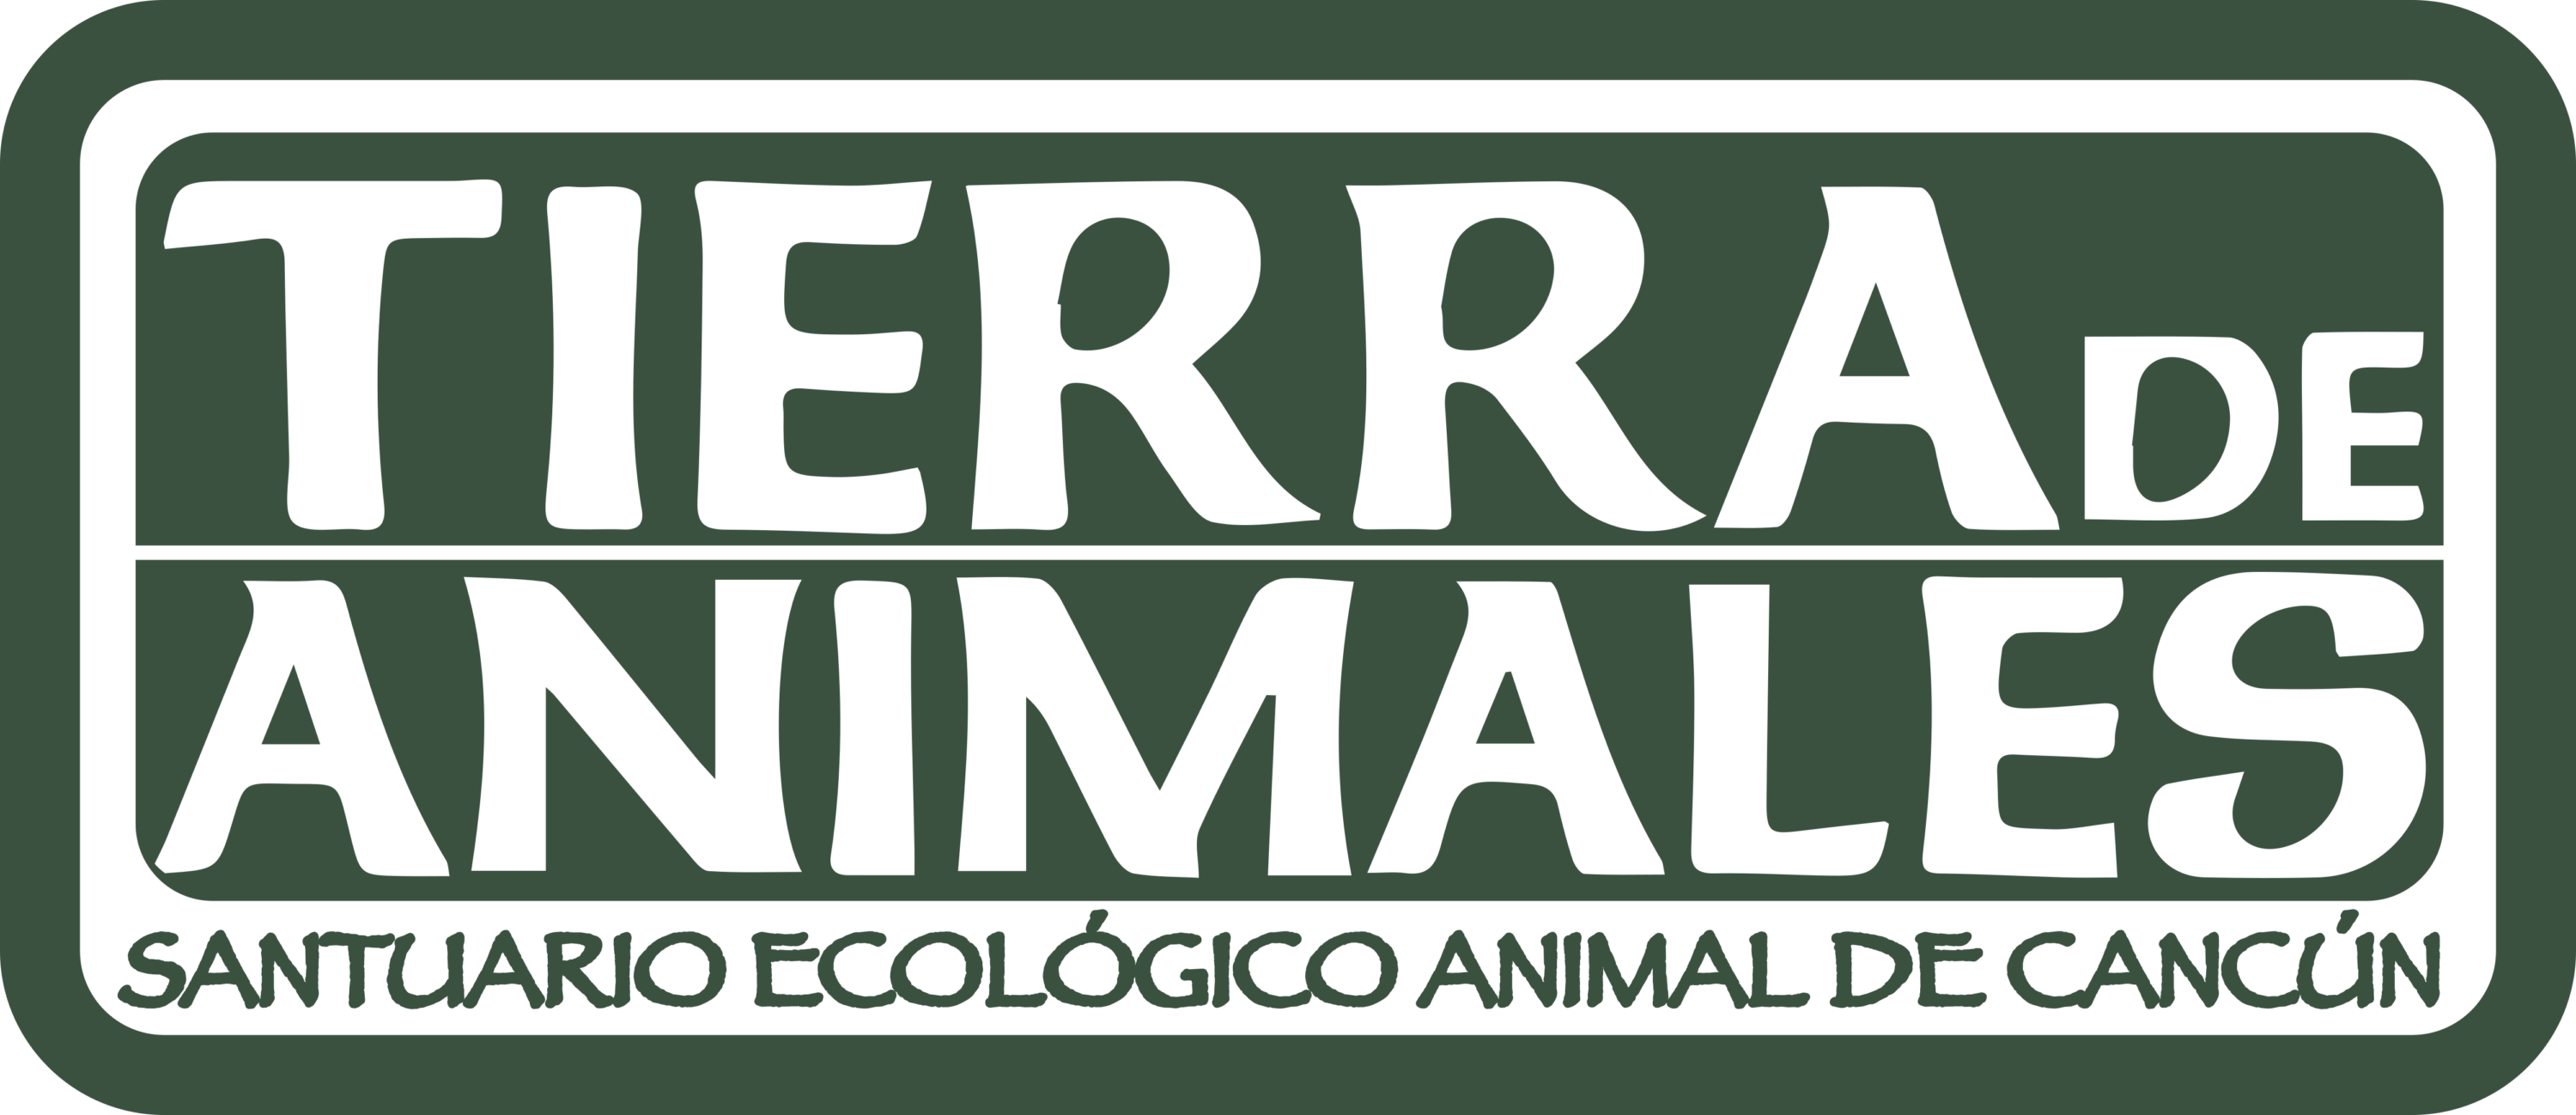 Tierra De Animales Logo